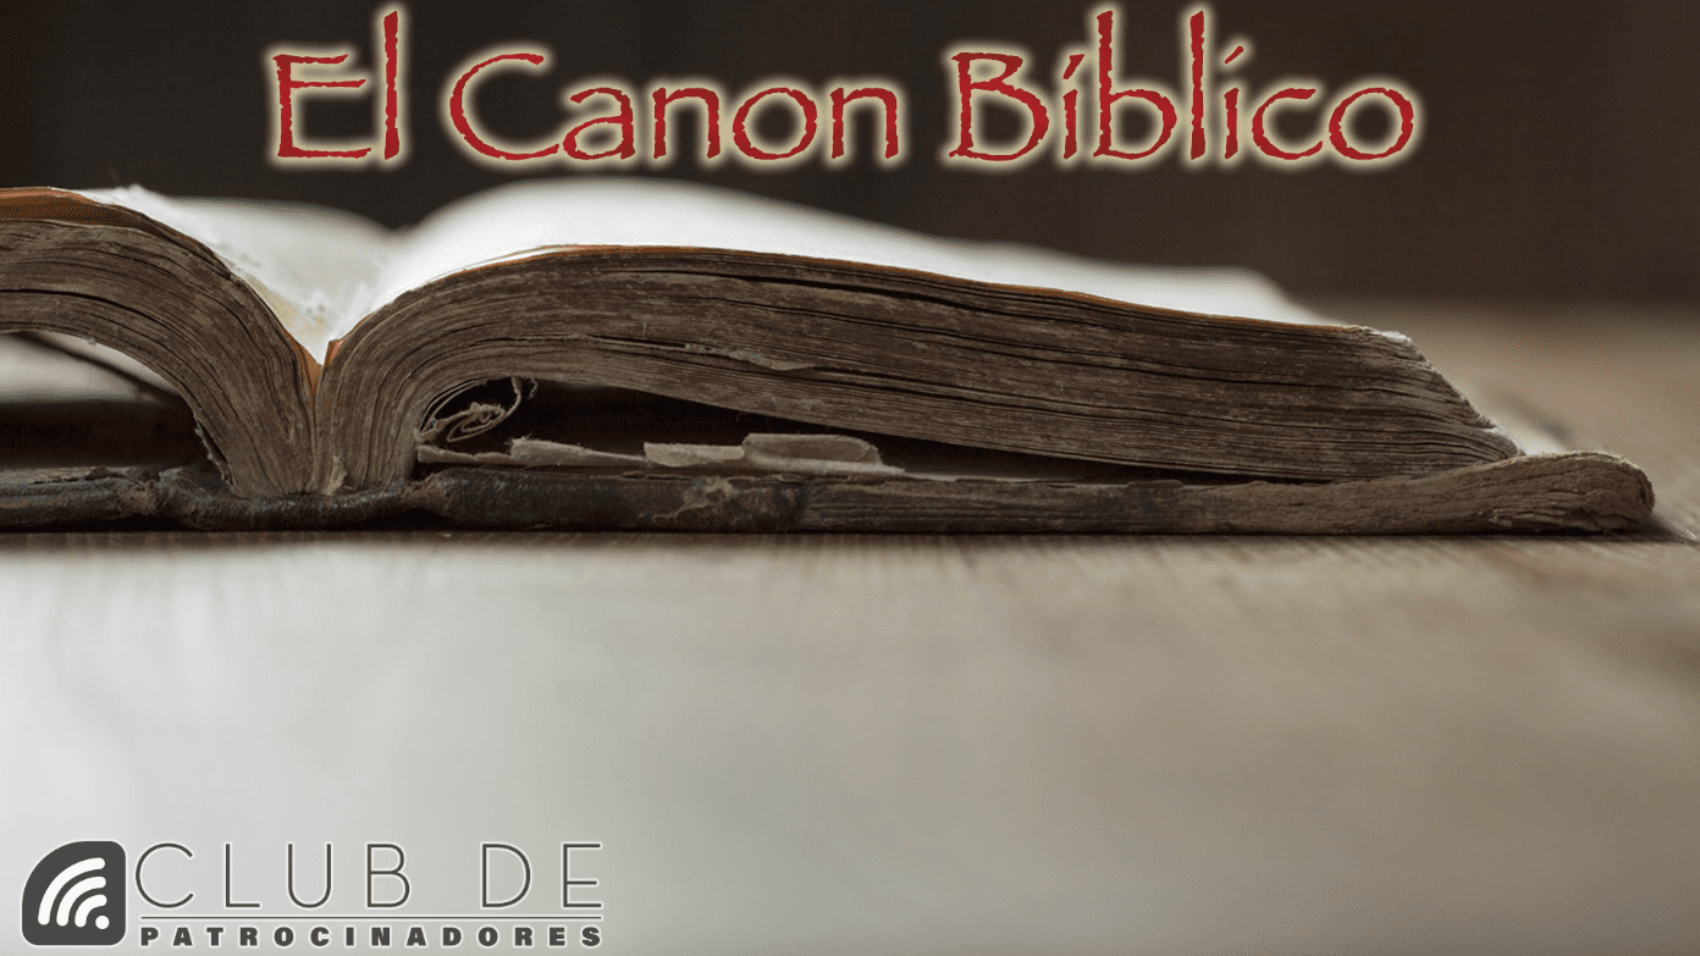 El canon biblico